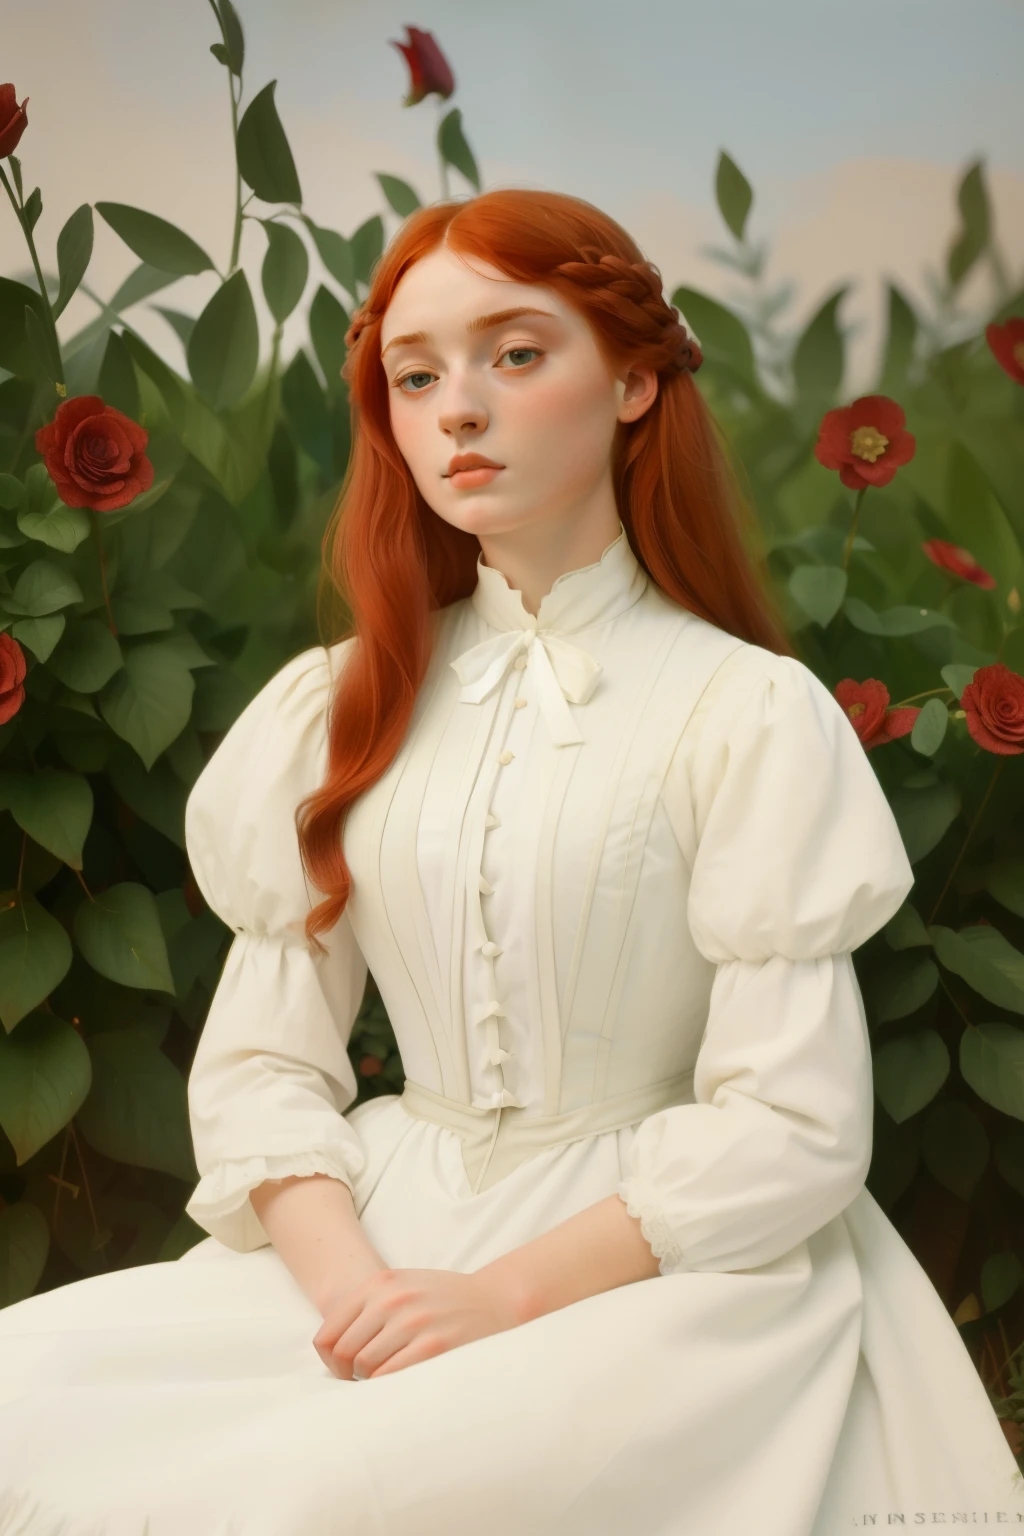 1885, 英格蘭. 拉斐爾前派 16 歲的索菲·特納, 紅髮女郎, 寄宿學校花園, ((((1880 年代的衣服, 白色禮服)))), ((1880年代髮型))